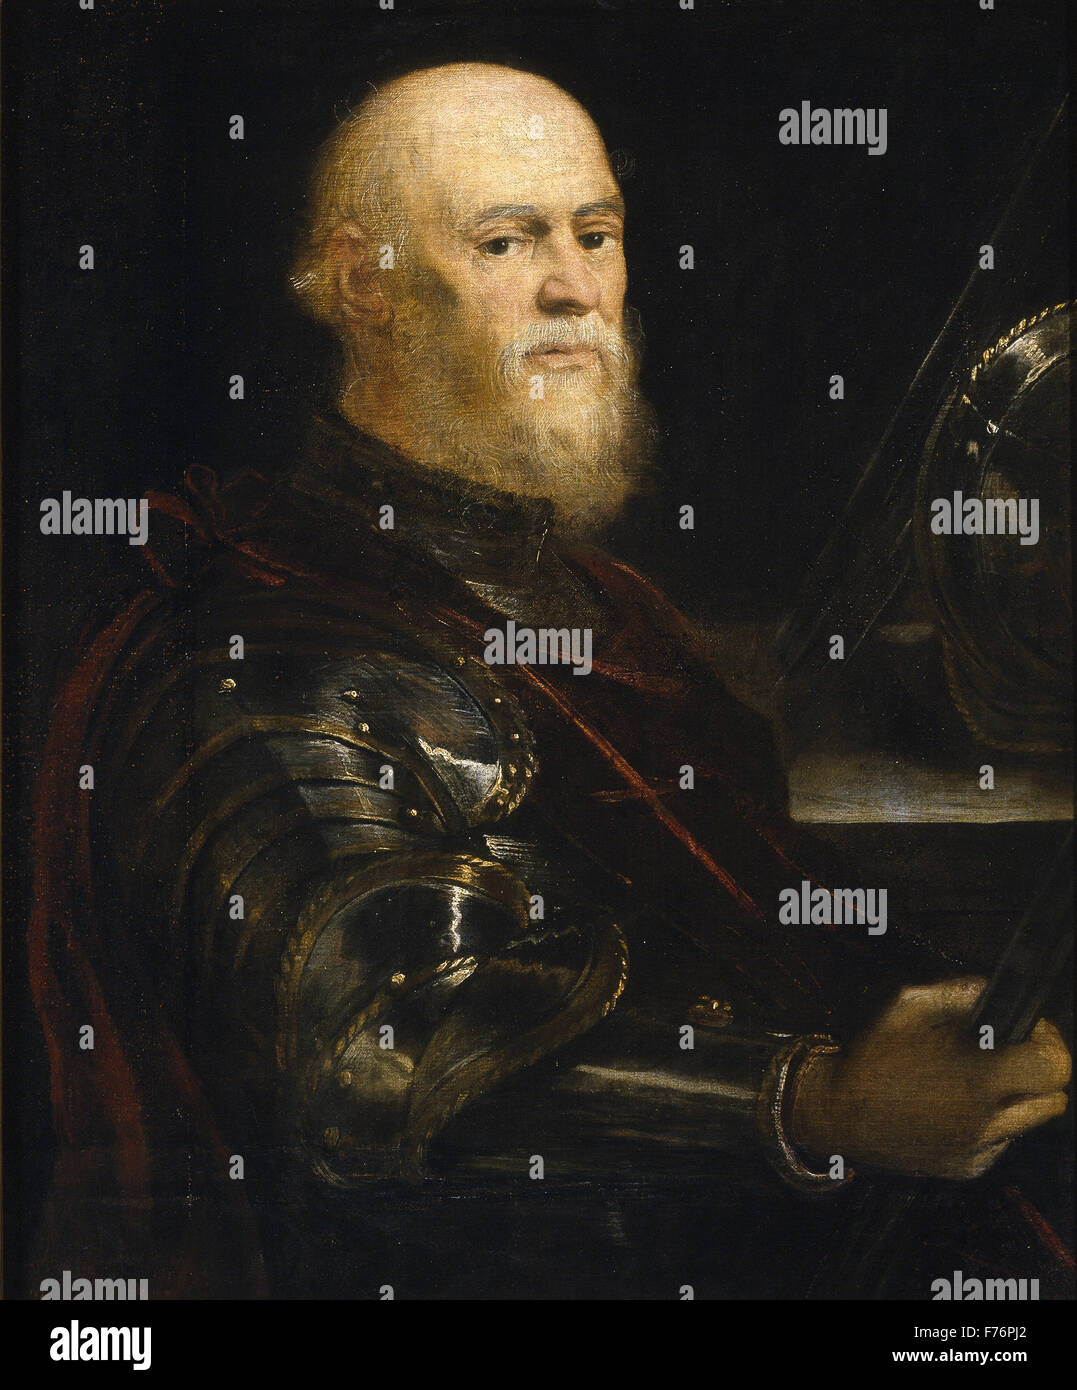 Ammiraglio veneziano immagini e fotografie stock ad alta risoluzione - Alamy